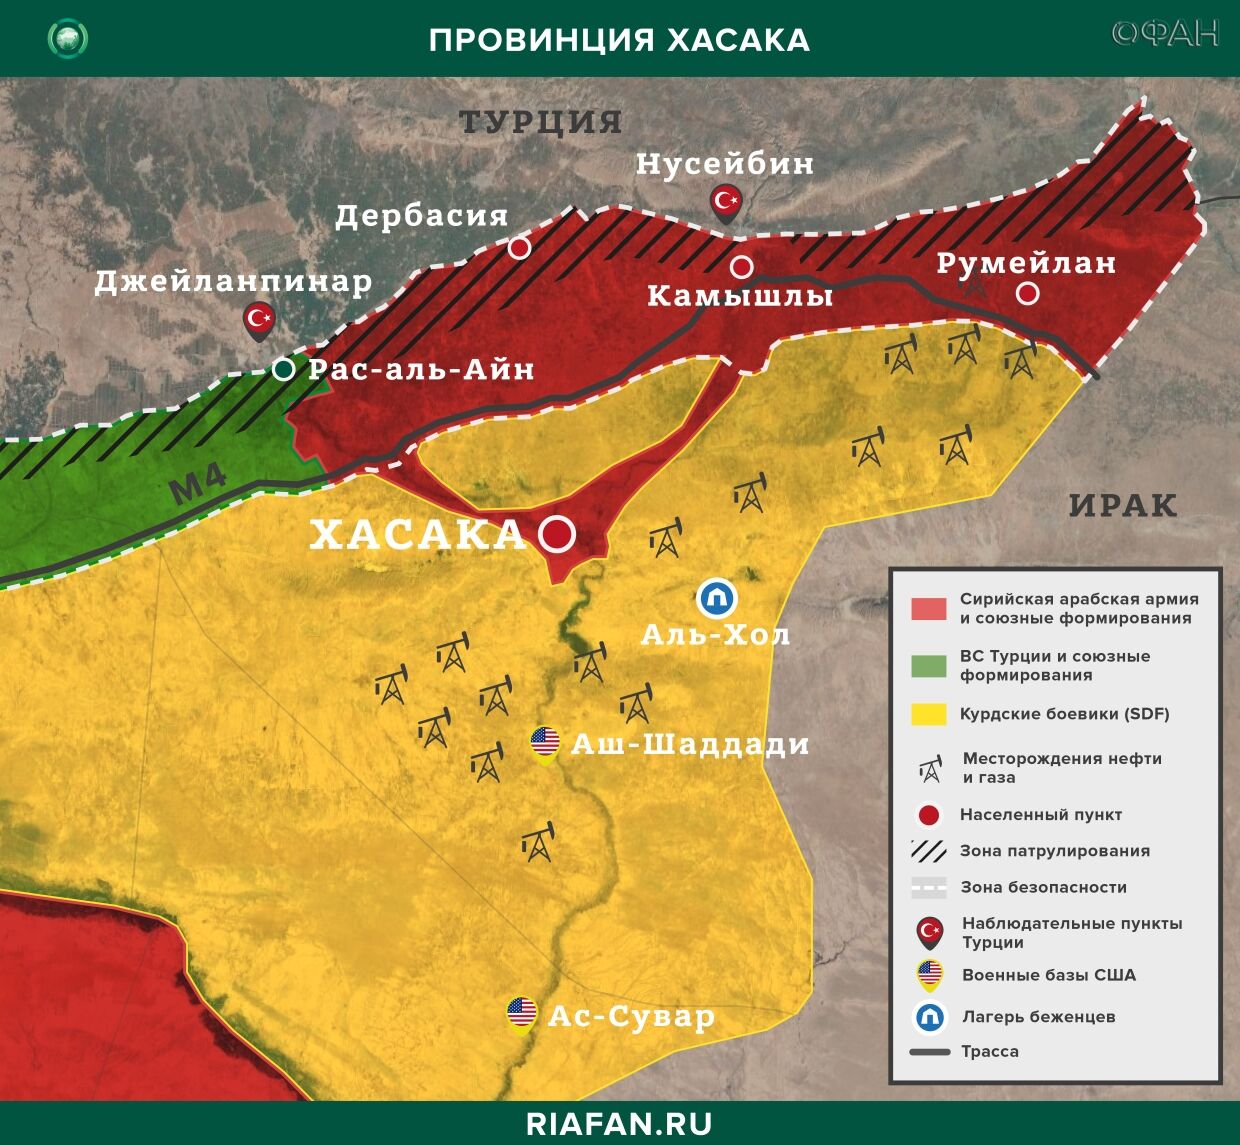 Resultados diarios de Siria para 1 Mayo 06.00: союзников Турции подозревают в поддержке террористов ИГ*, SDF изолировали квартал в Хасаке